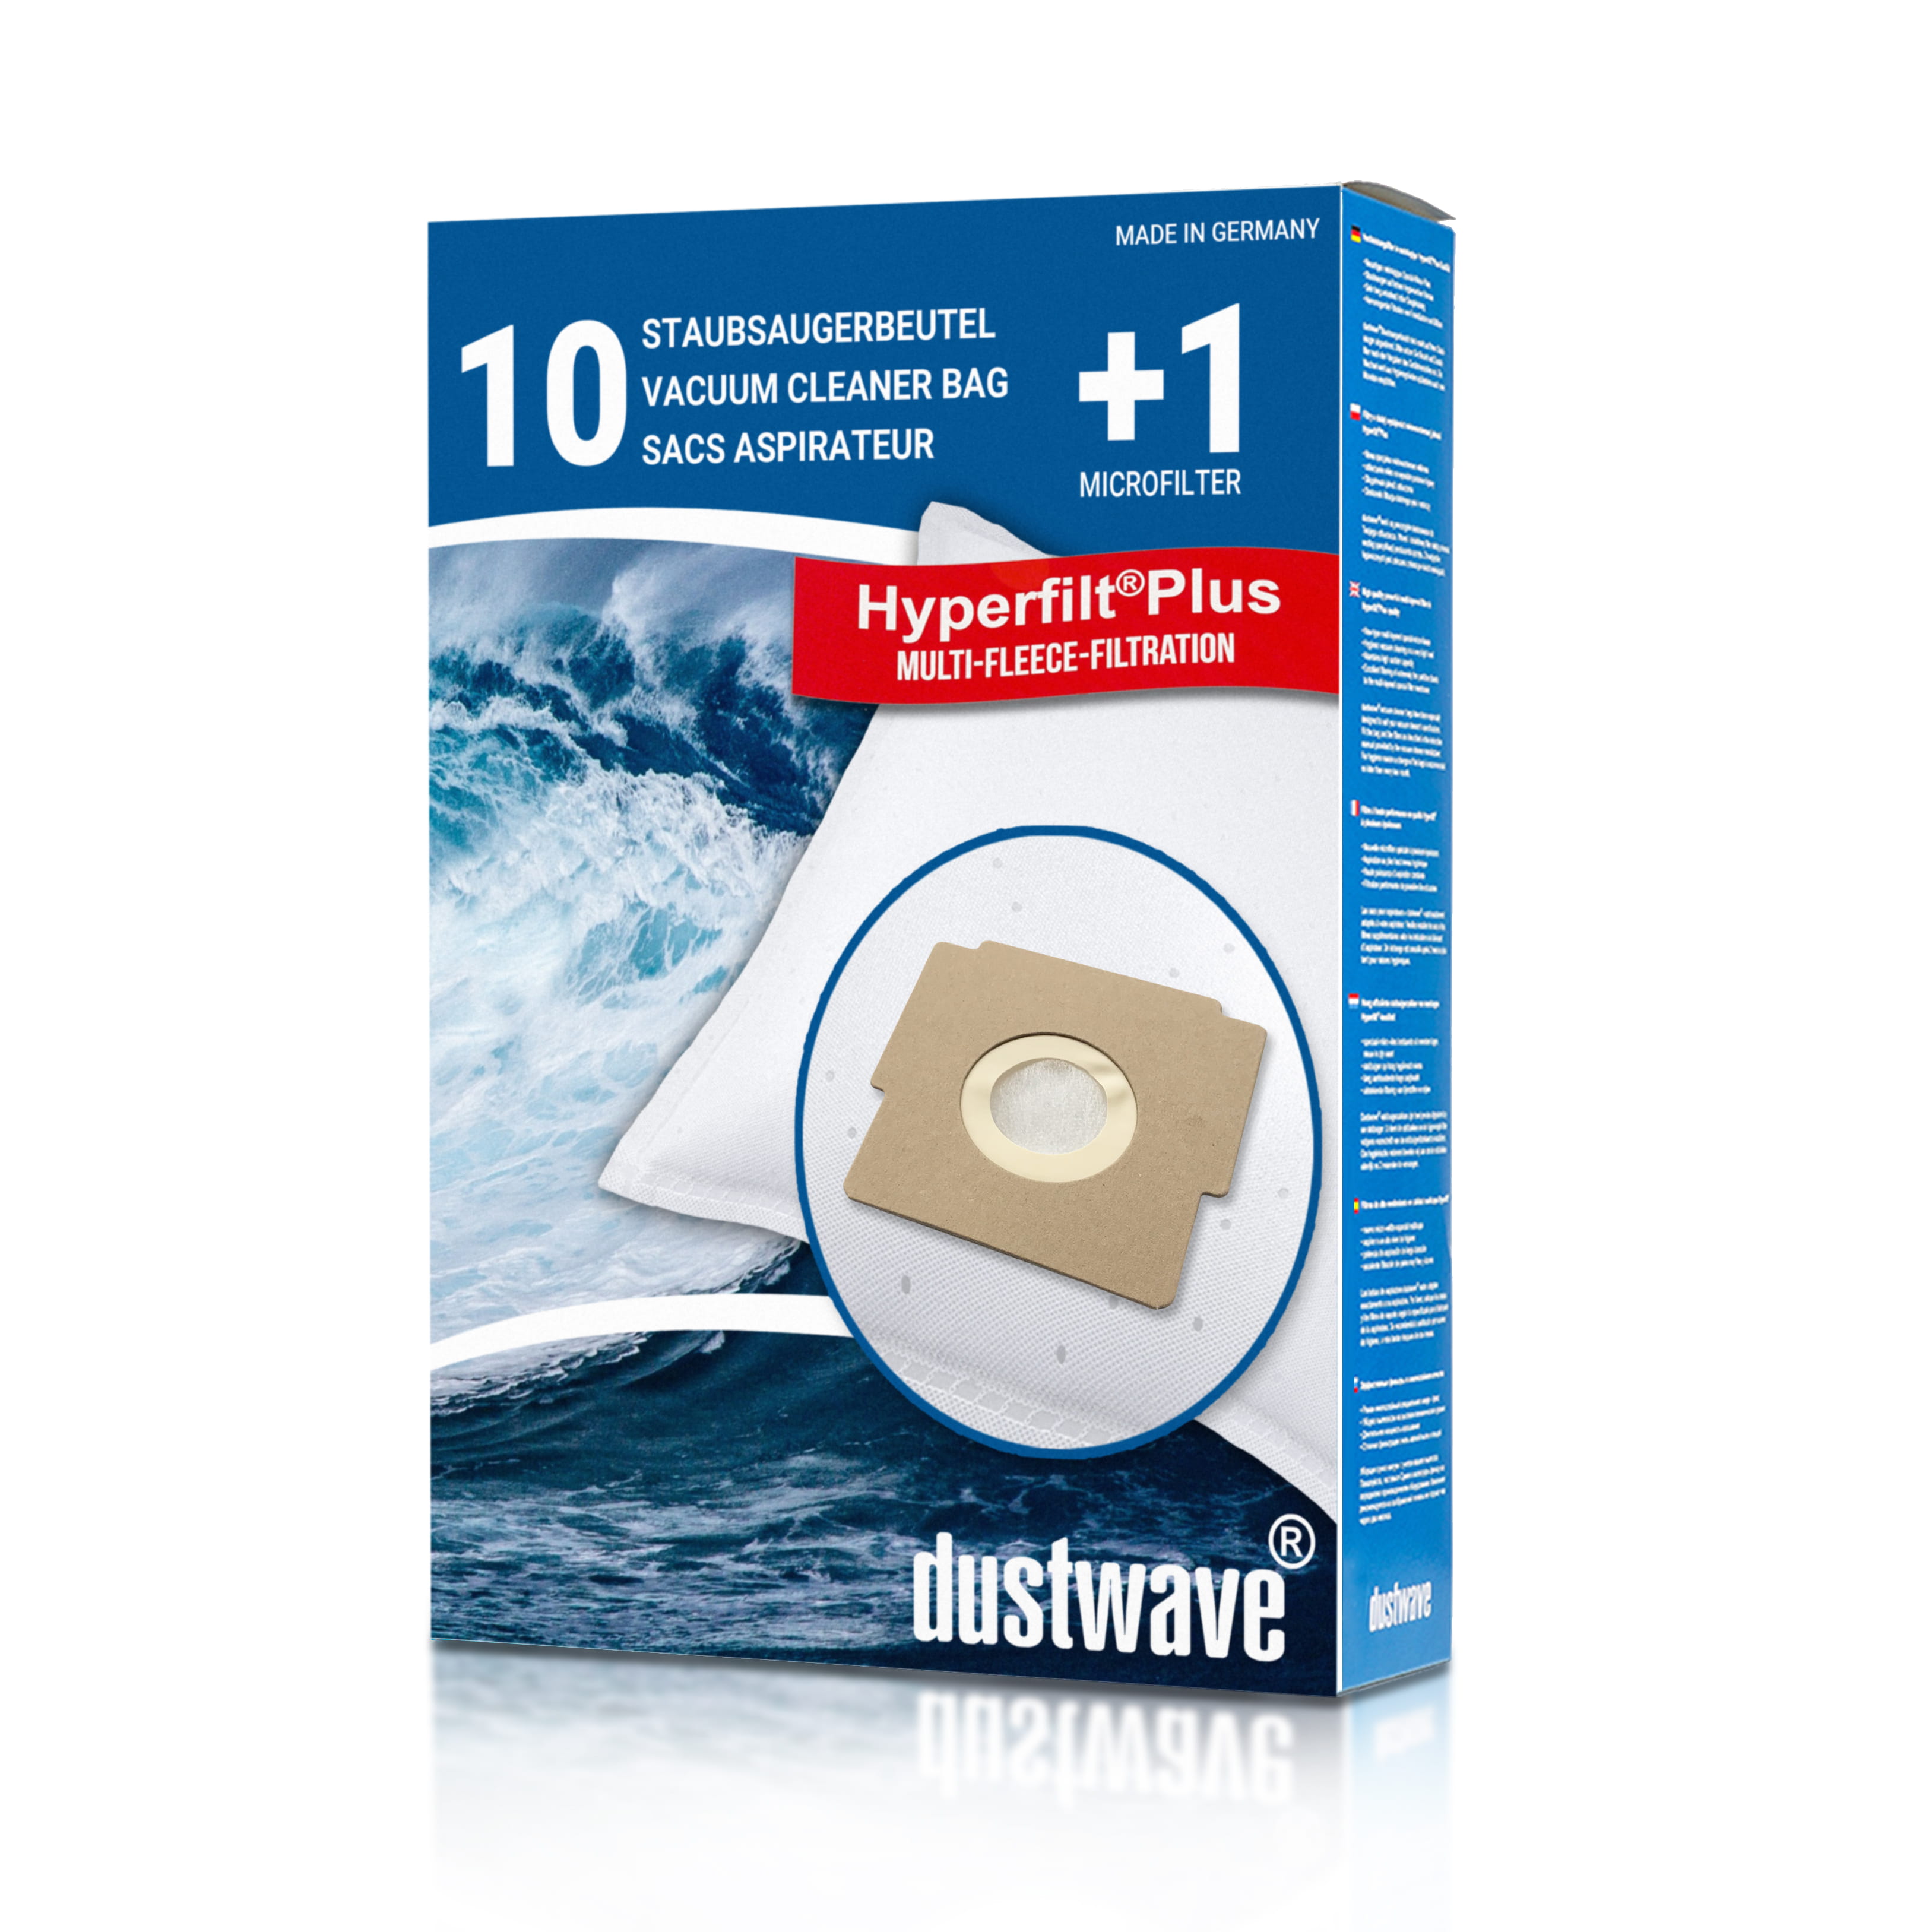 Dustwave® 10 Staubsaugerbeutel für Bestron K 00020 / K00020 - hocheffizient, mehrlagiges Mikrovlies mit Hygieneverschluss - Made in Germany